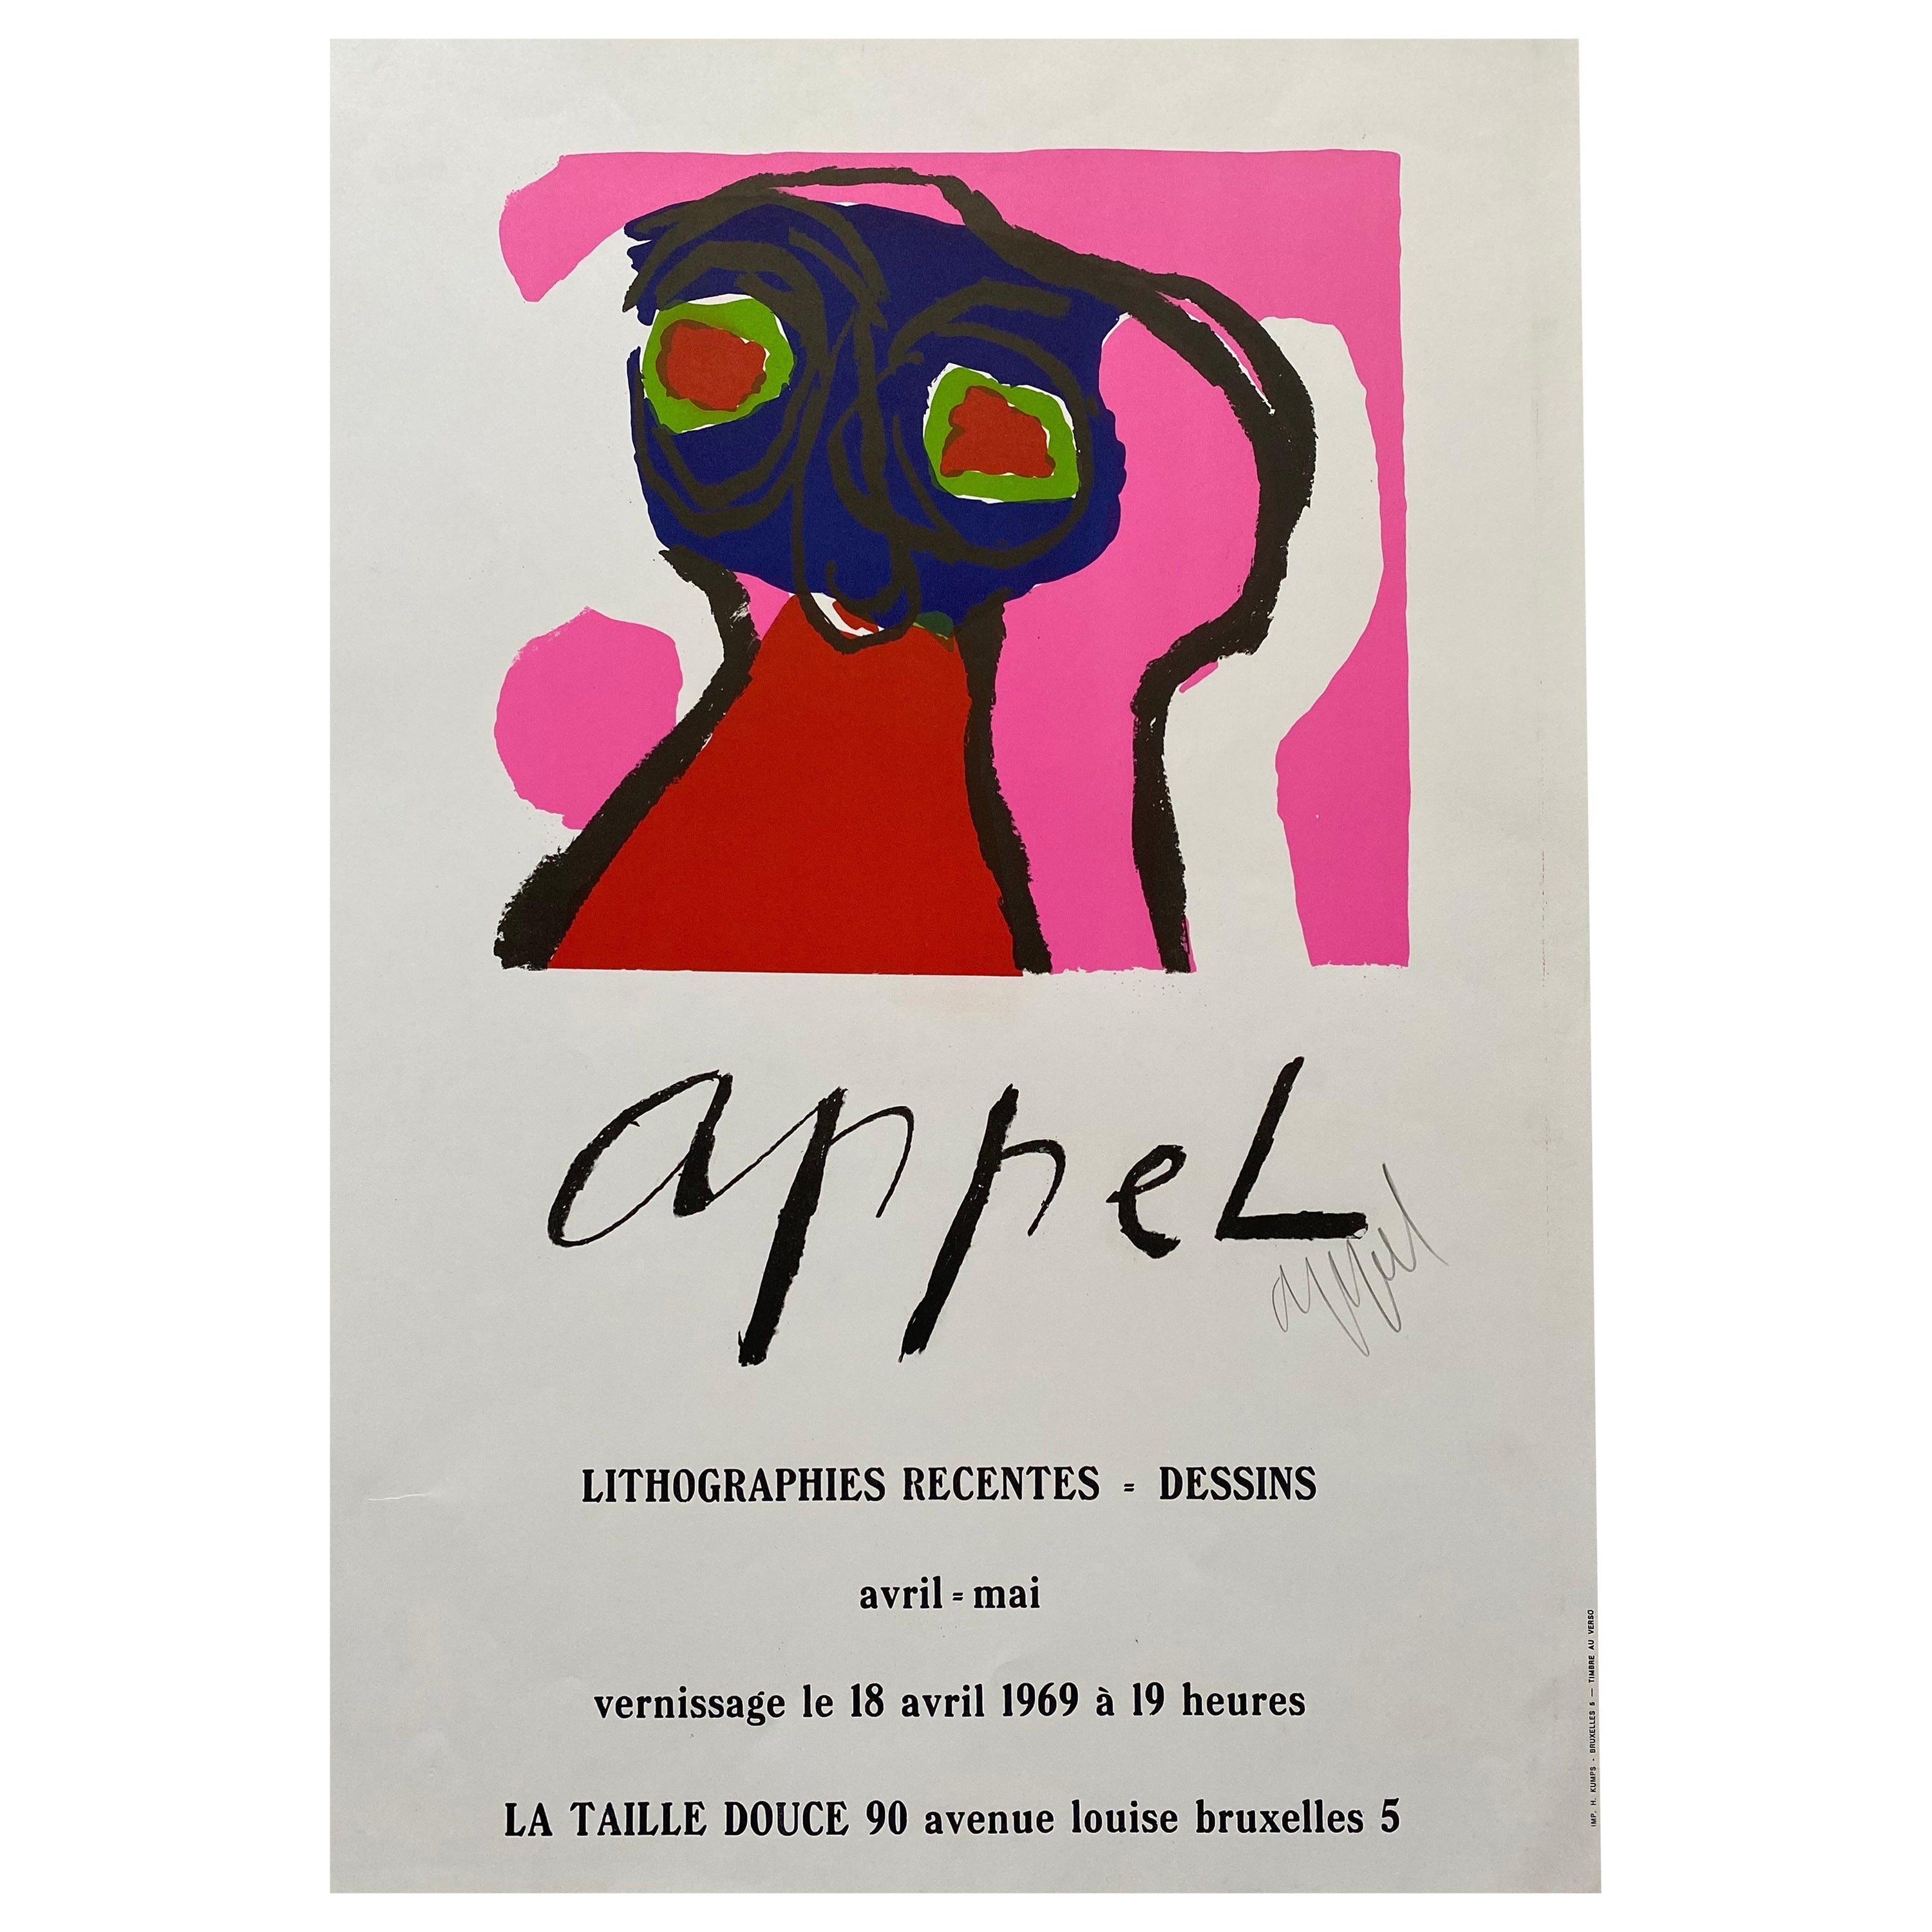 Lithographie publicitaire signée Karel Appel, 1969